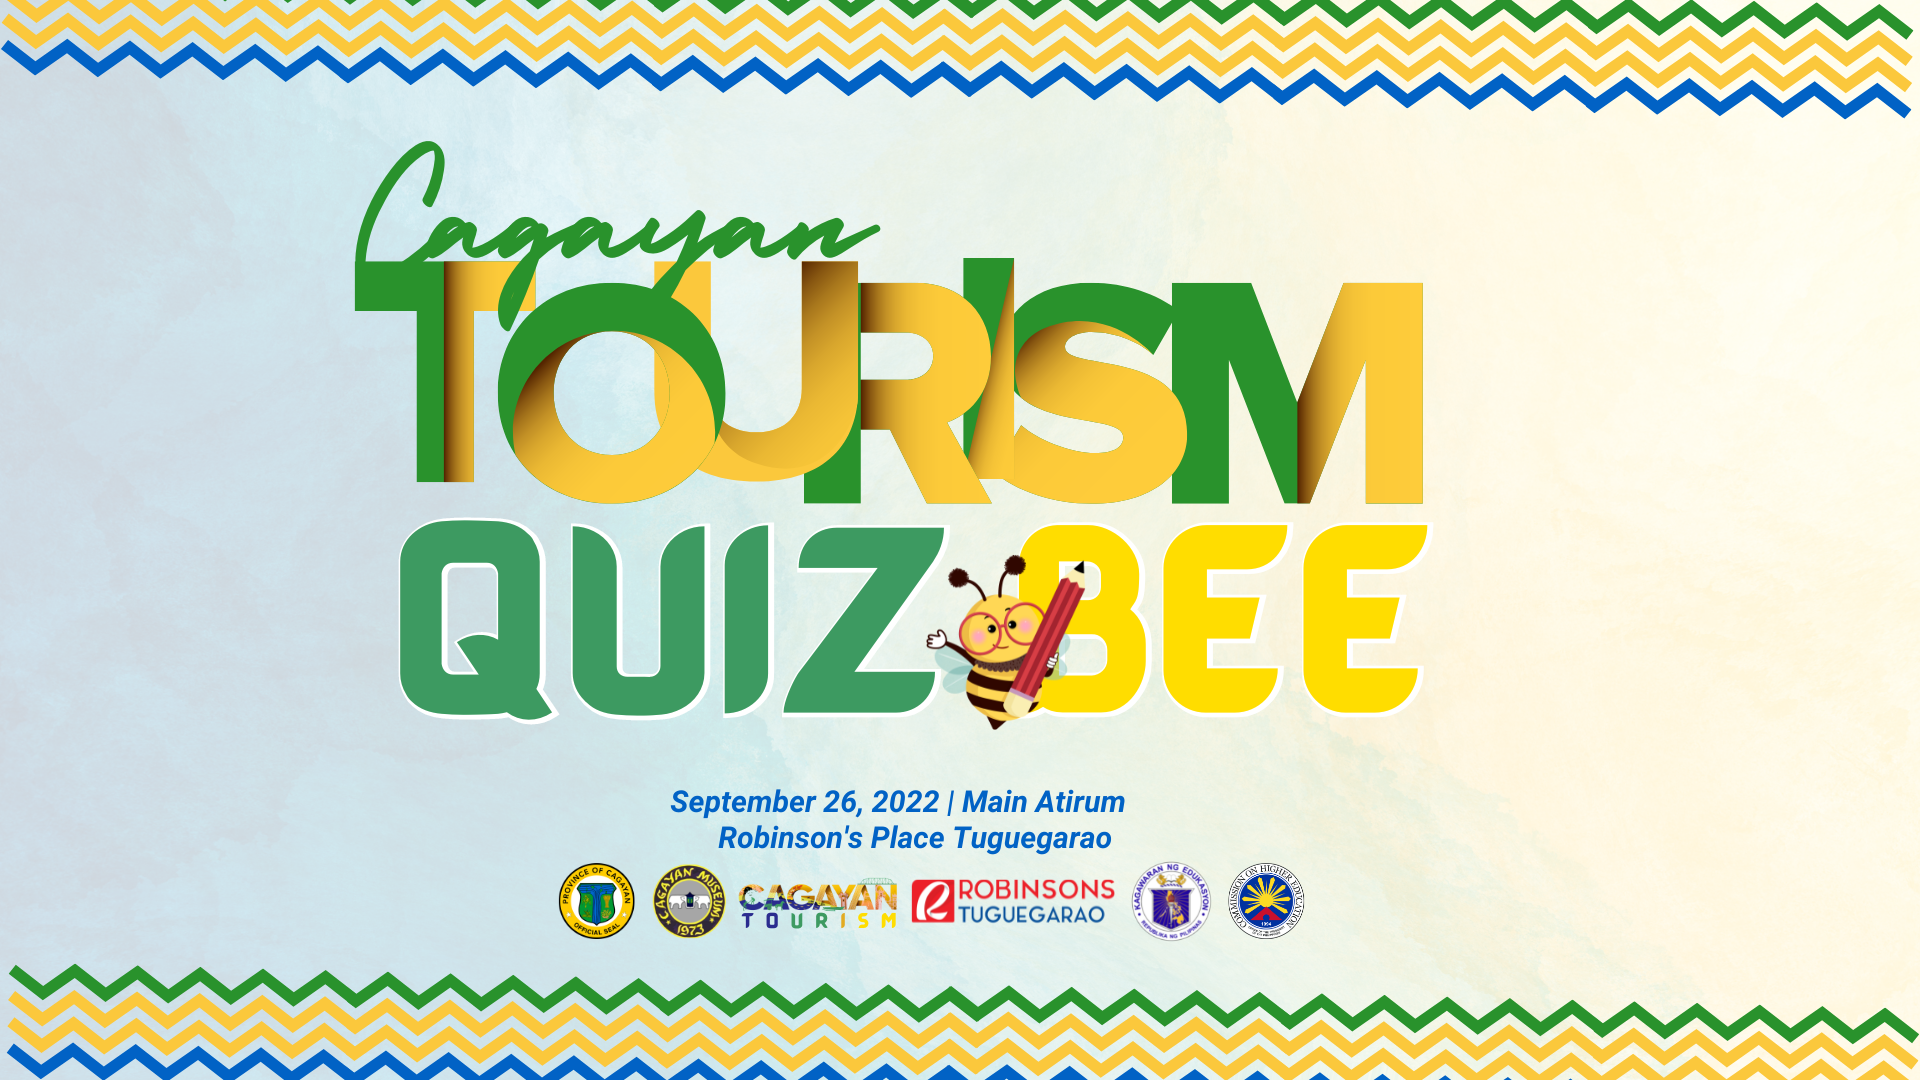 tourism quiz bee